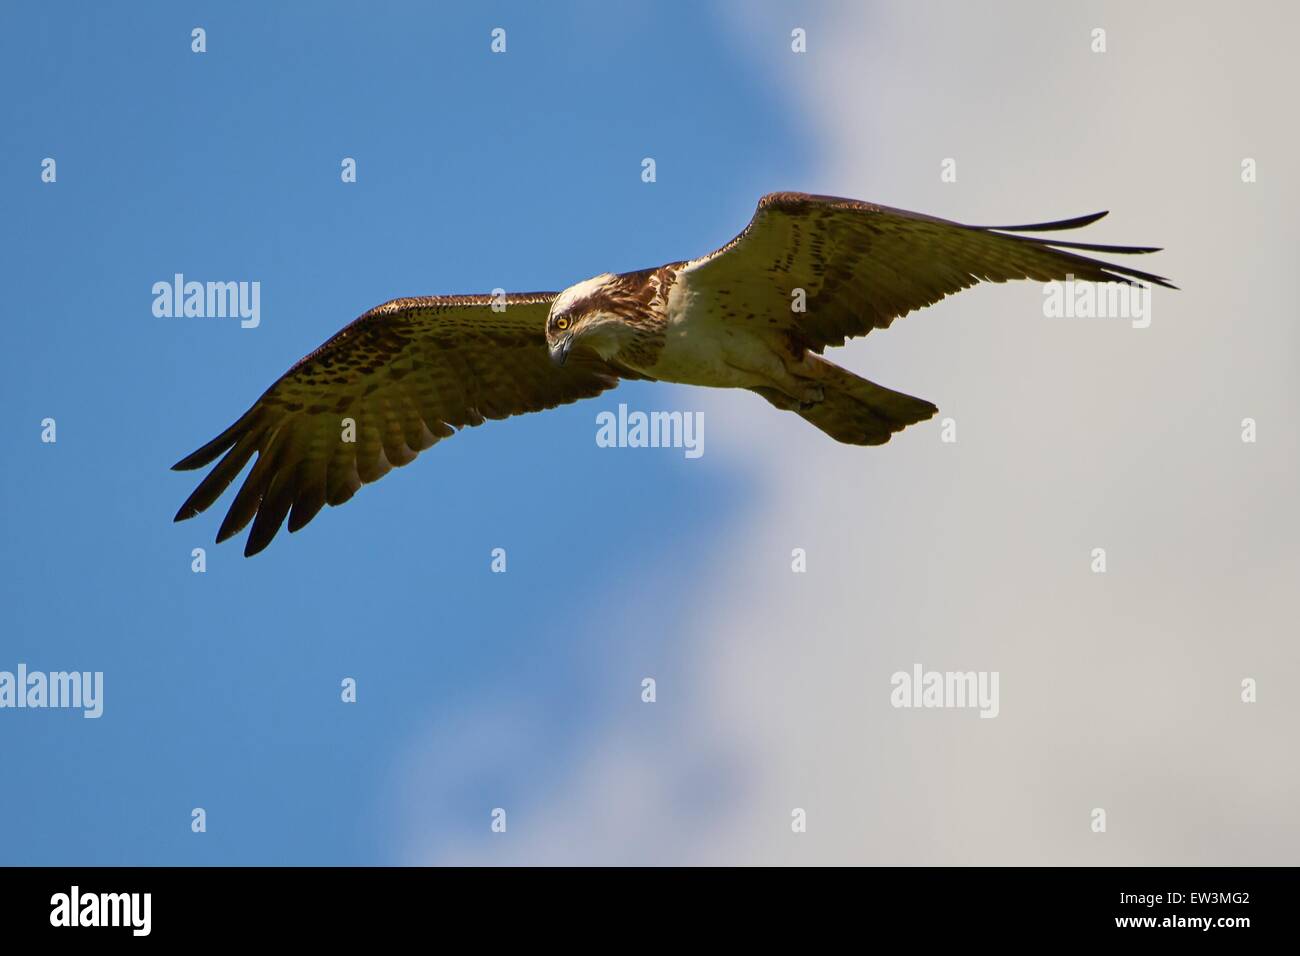 Jagd-Fischadler in den blauen Himmel mit einigen Wolken fliegen. Dieser Raubvogel sucht die nächste Mahlzeit im Wasser. Stockfoto